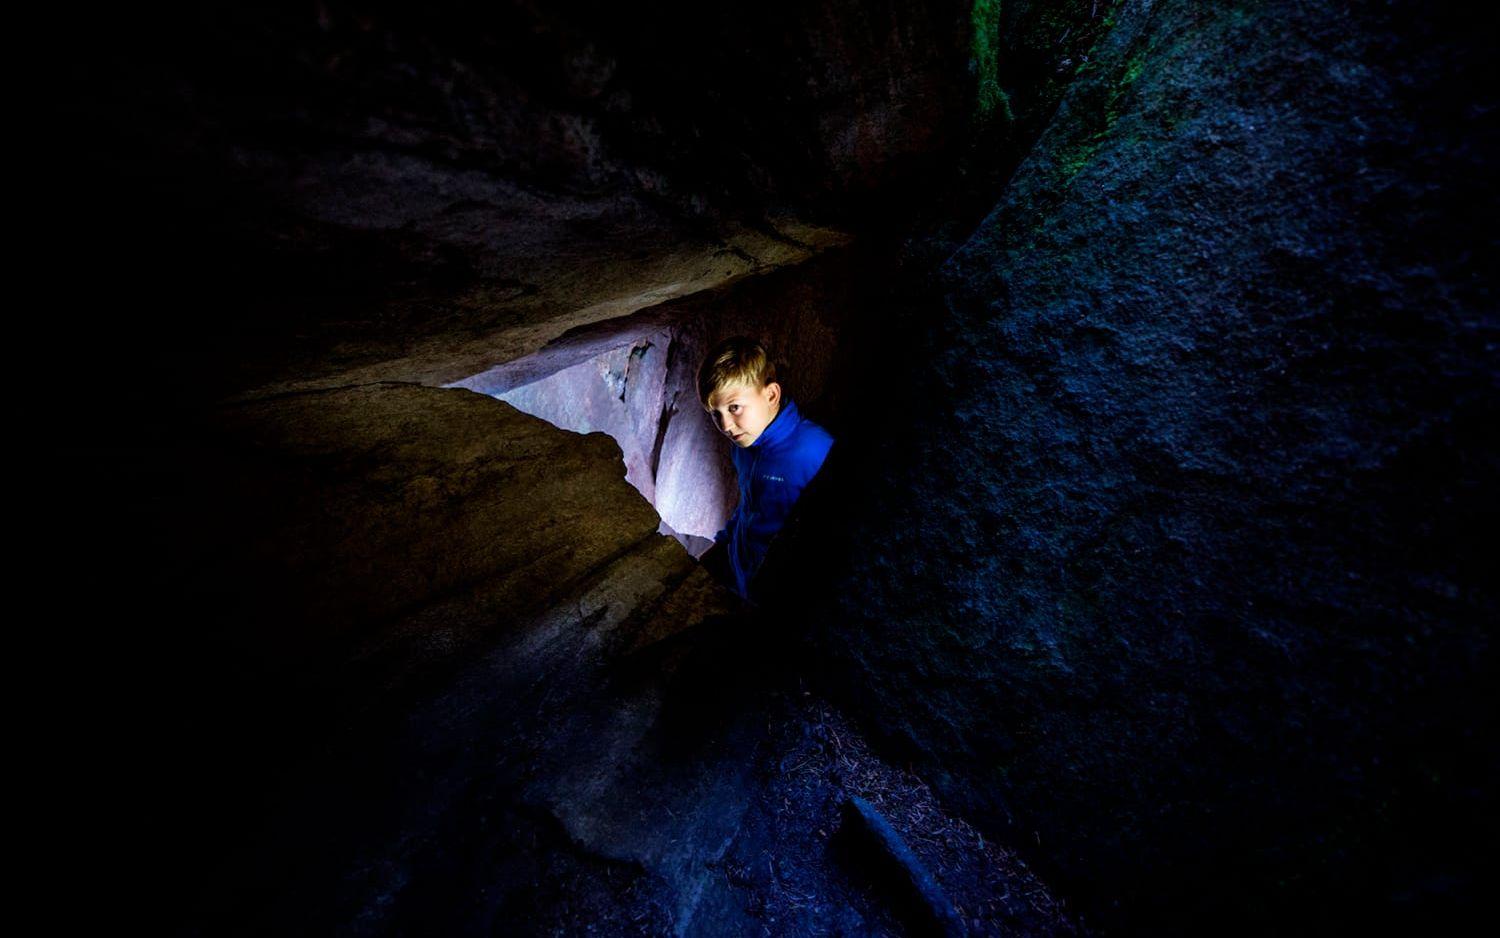 När man väl är nere i grottan kommer man att upptäcka att det som är litet har en vidsträckt rymd och att det uppstår märkliga akustiska effekter i rummet. Bild: Nicklas Elmrin.